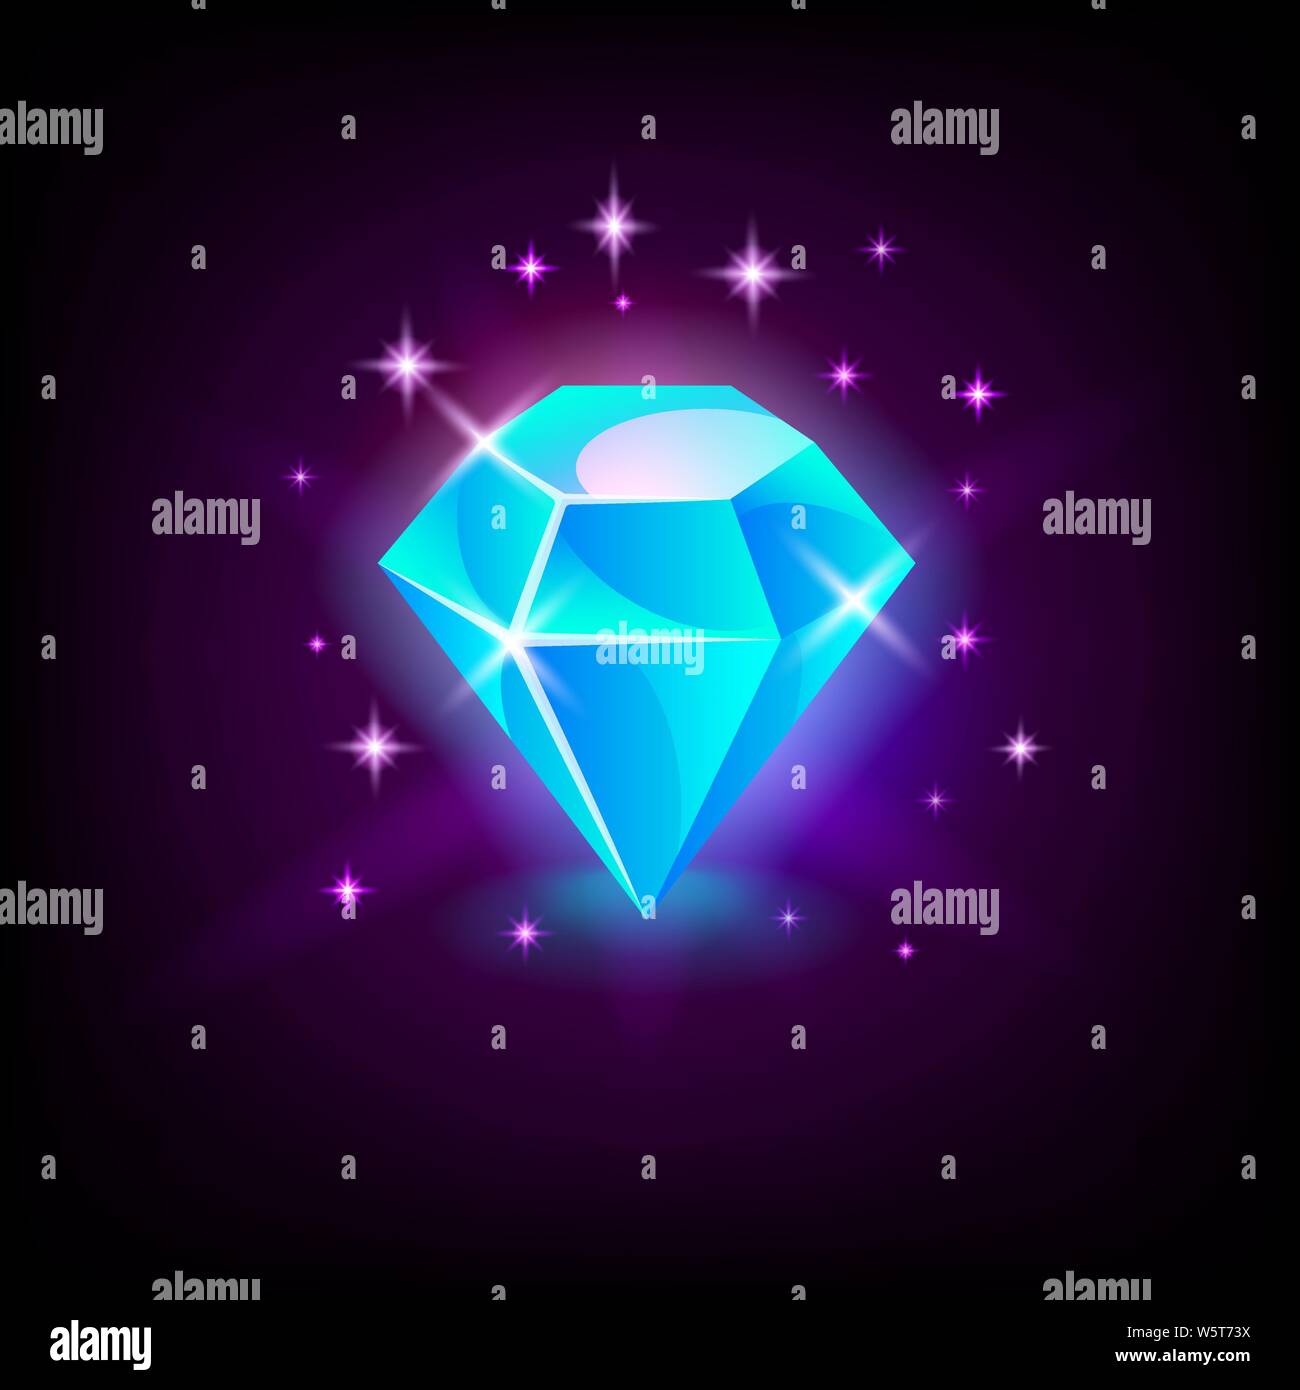 Shining blue diamond, gemstone, slot icon for online casino or logo for mobile game on dark background, vector illustration. Stock Vector